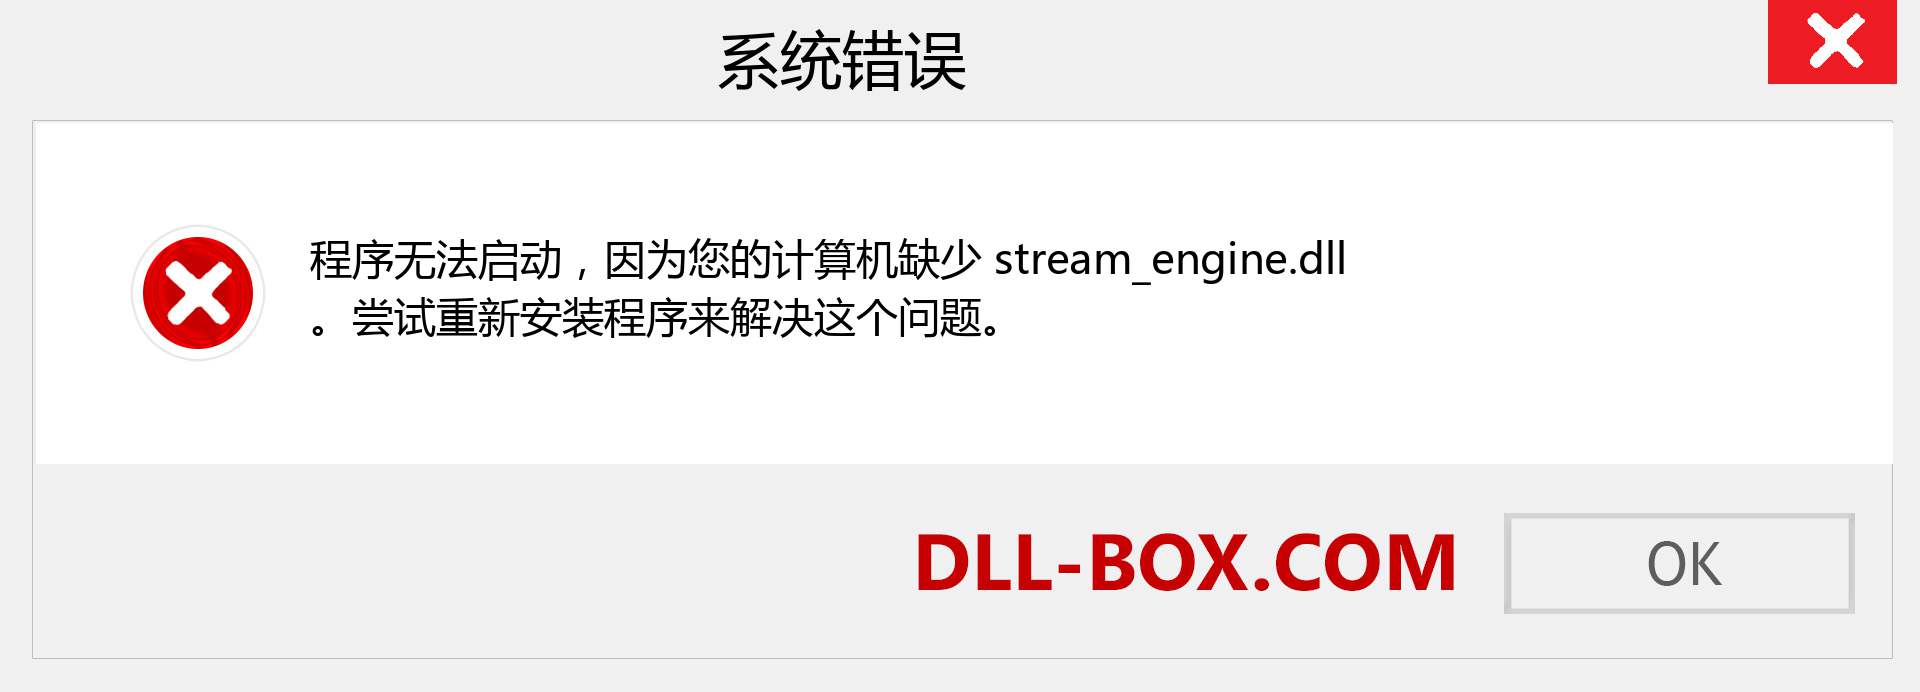 stream_engine.dll 文件丢失？。 适用于 Windows 7、8、10 的下载 - 修复 Windows、照片、图像上的 stream_engine dll 丢失错误